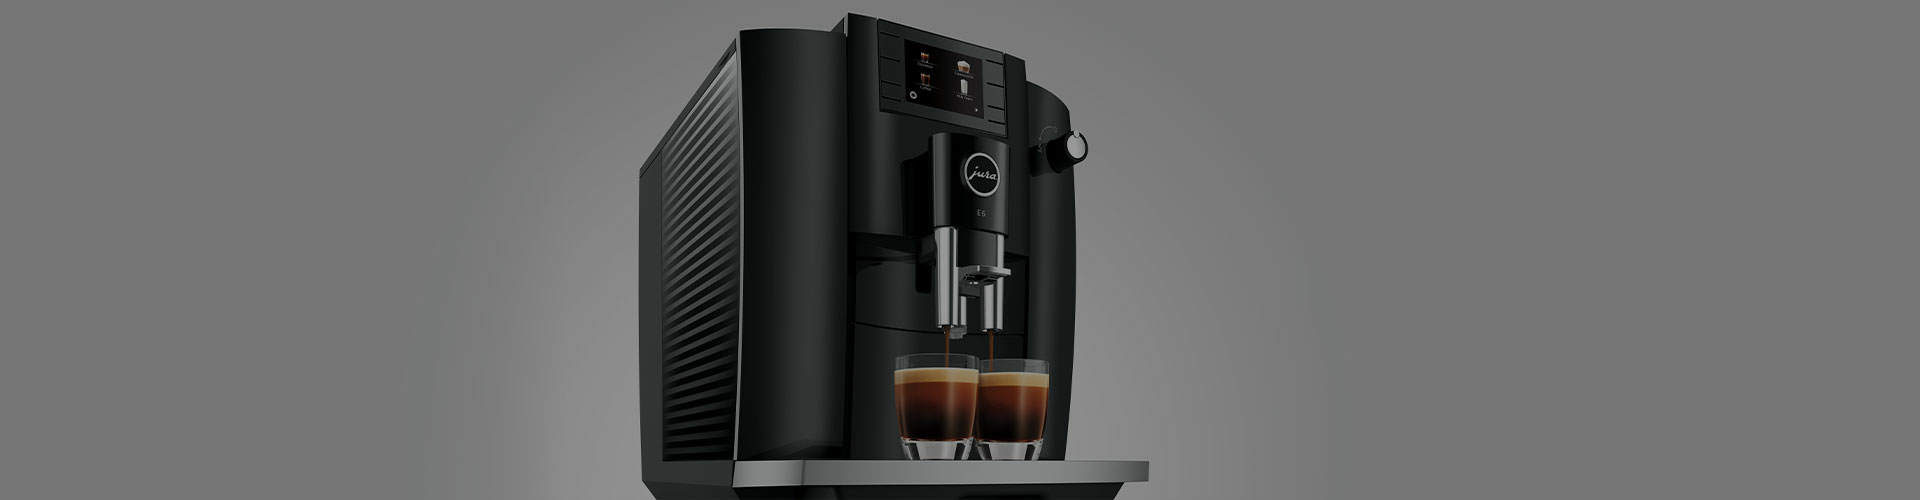 Jura E6 koffiemachine reiniging